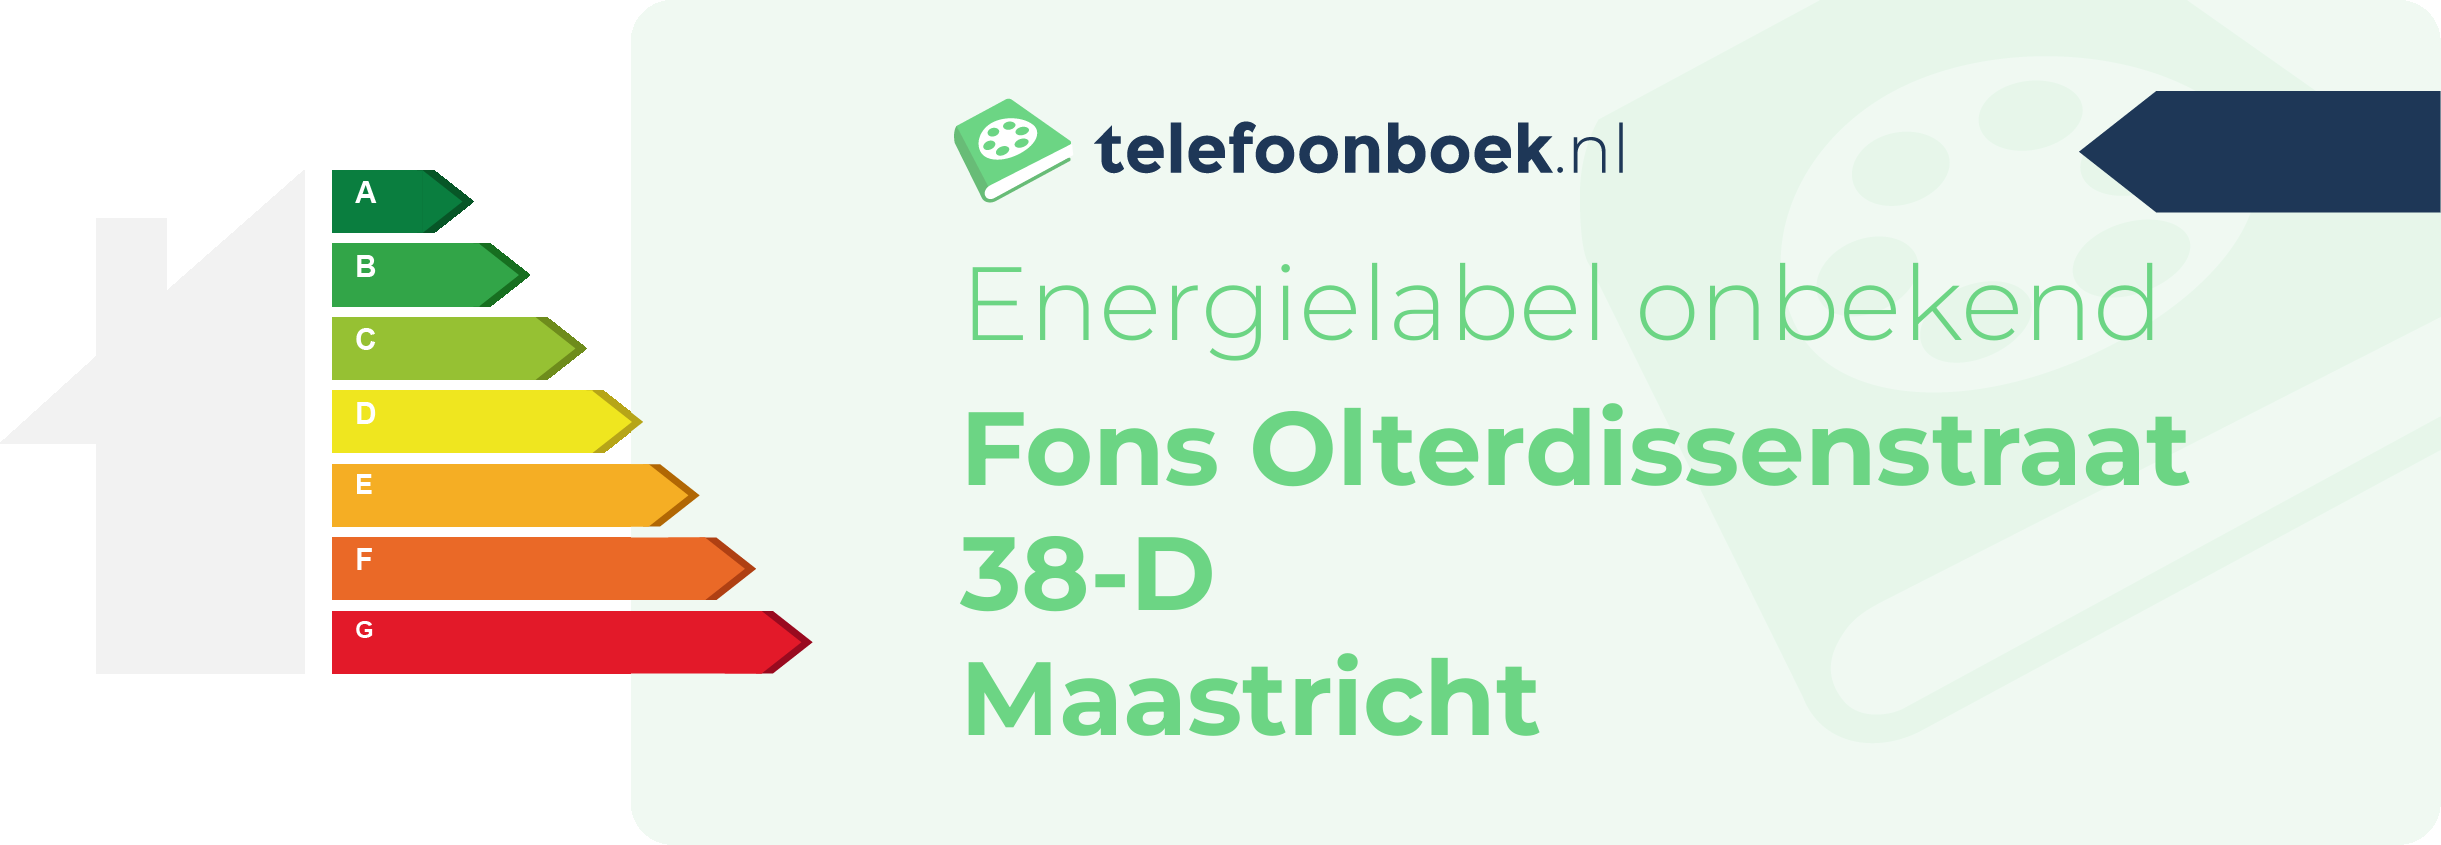 Energielabel Fons Olterdissenstraat 38-D Maastricht